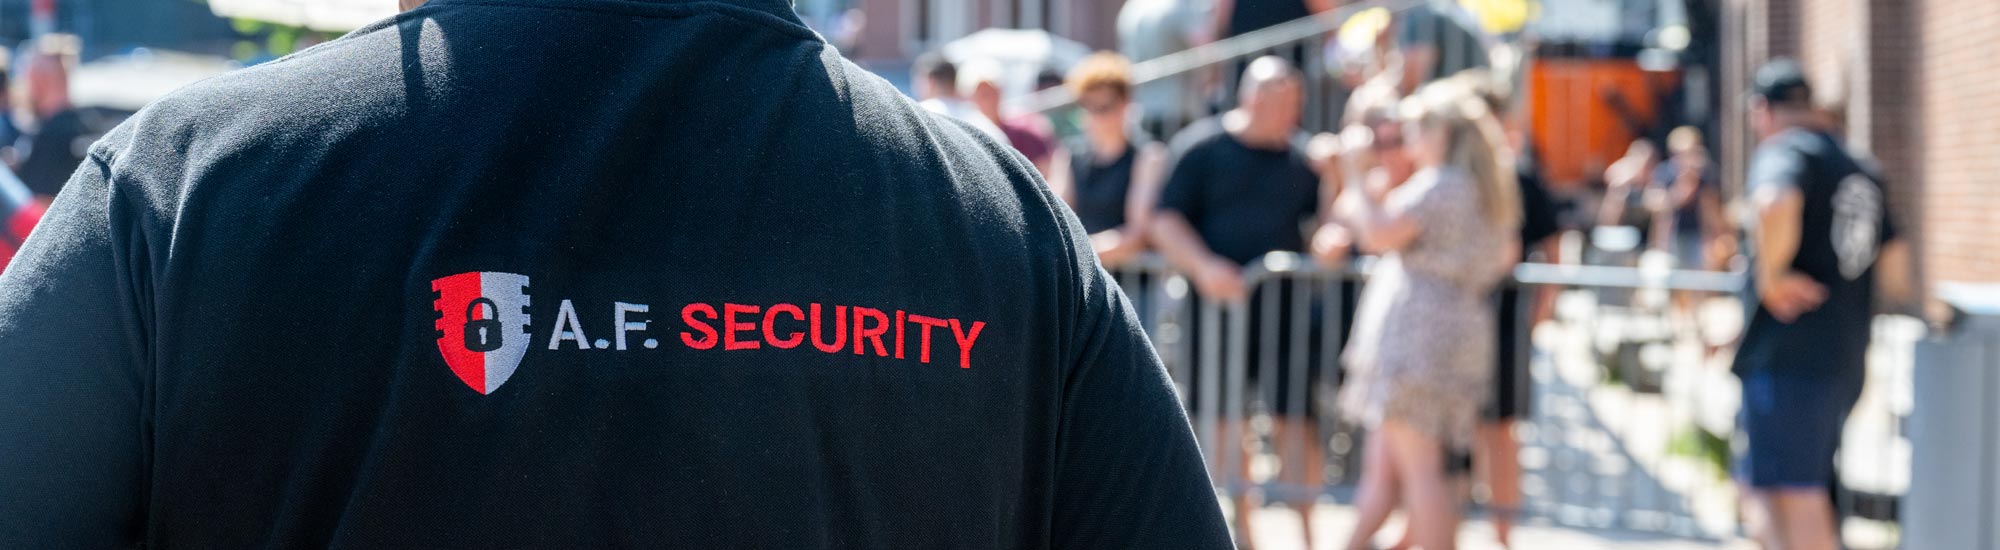 Professionele beveiliging - Beveiligingsbedrijf A.F. Security Winschoten